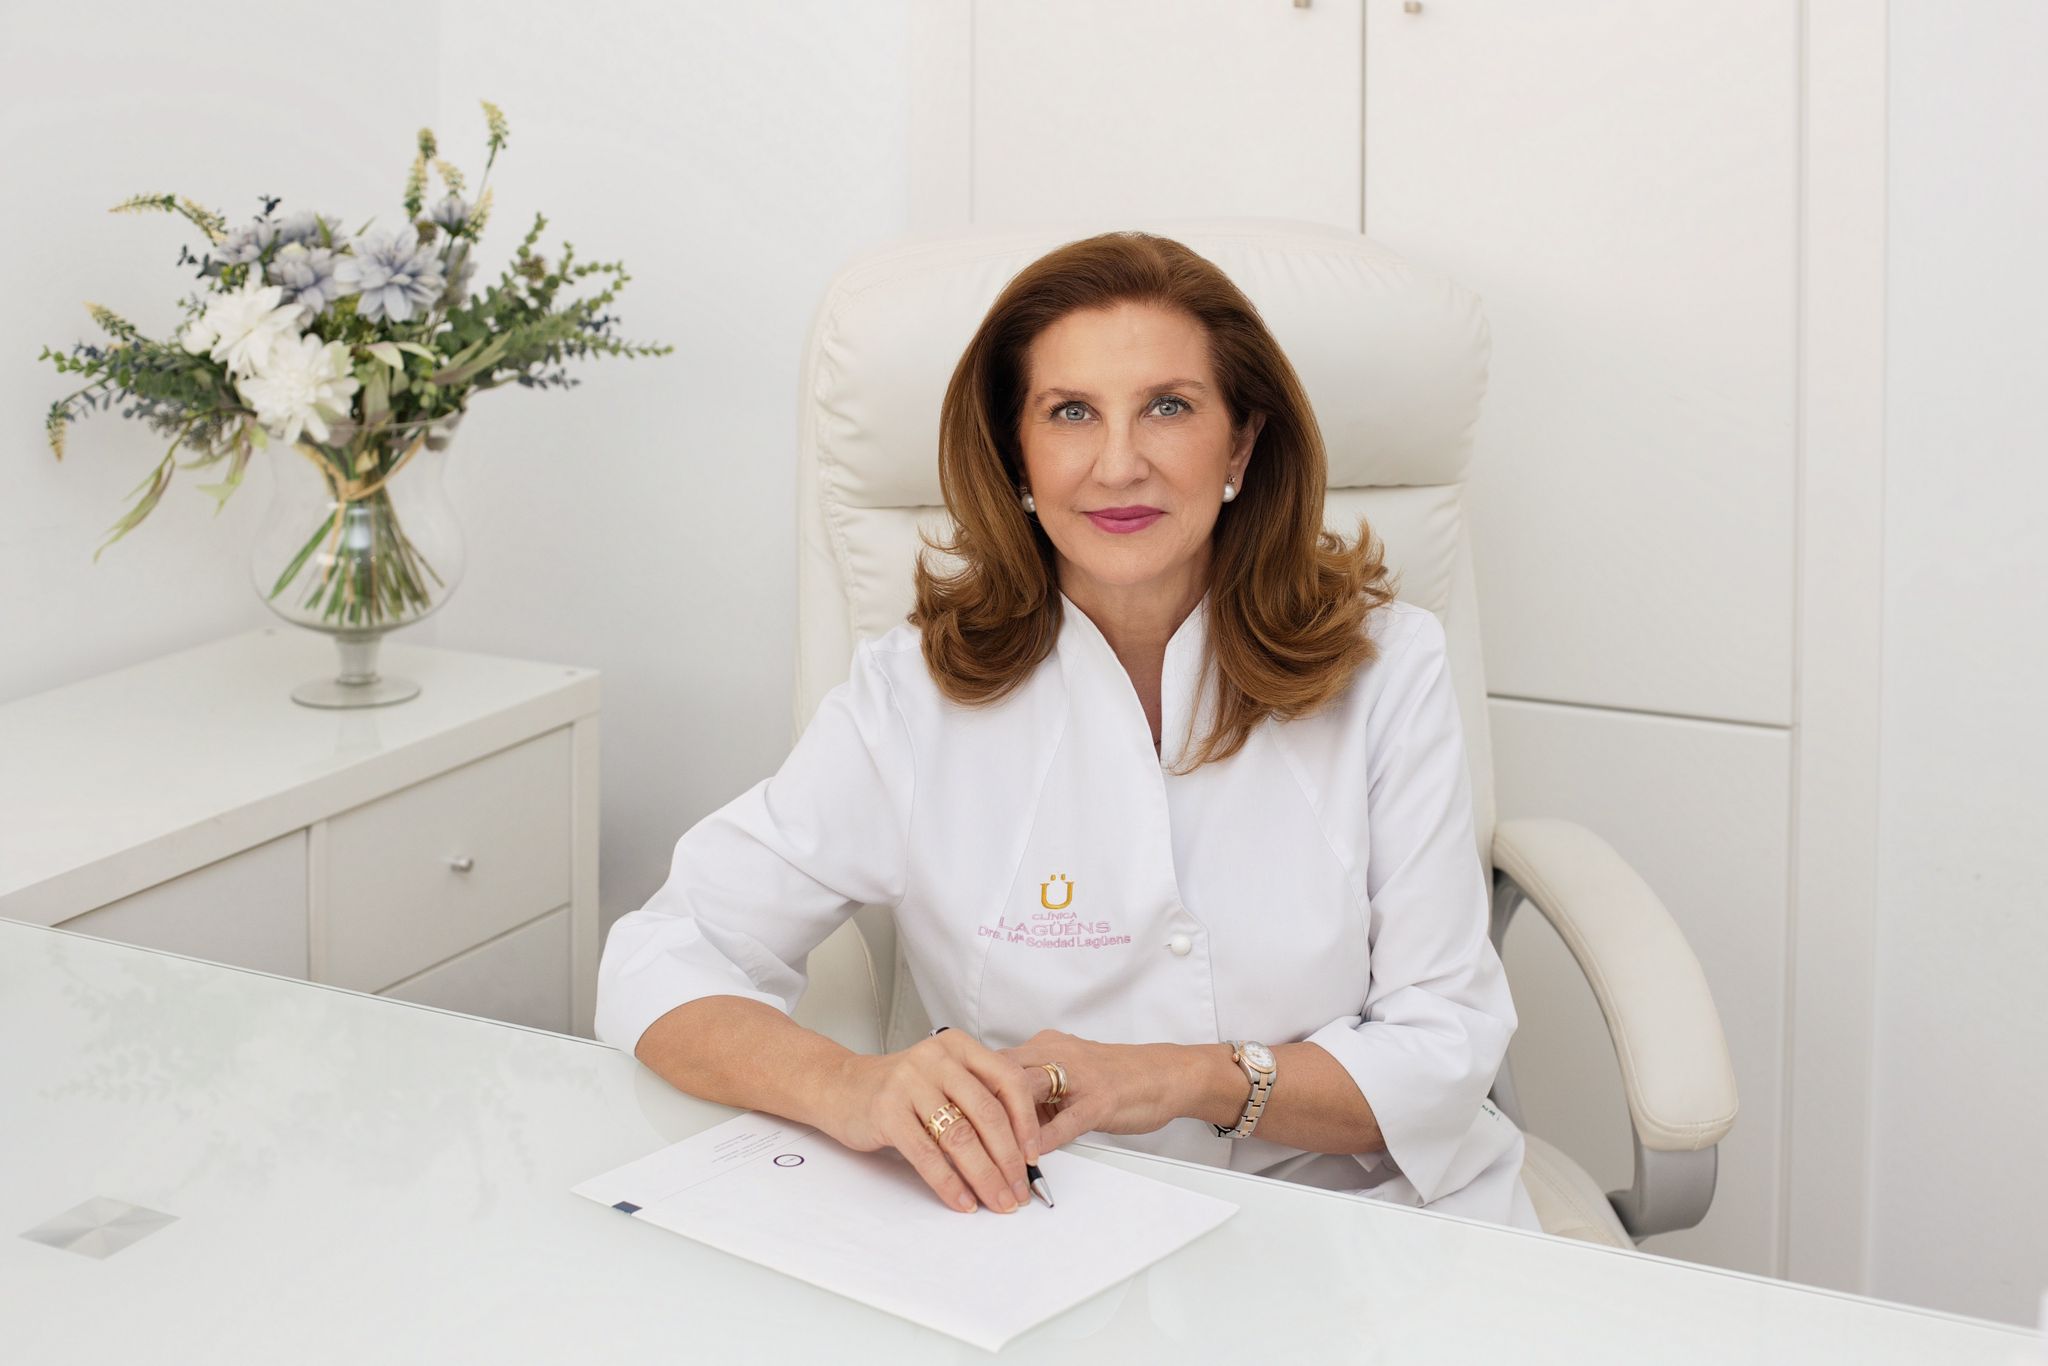 soledad Lagüéns es fundadora y directora médica de Clínica Lagüéns, medicina estética en sevilla 